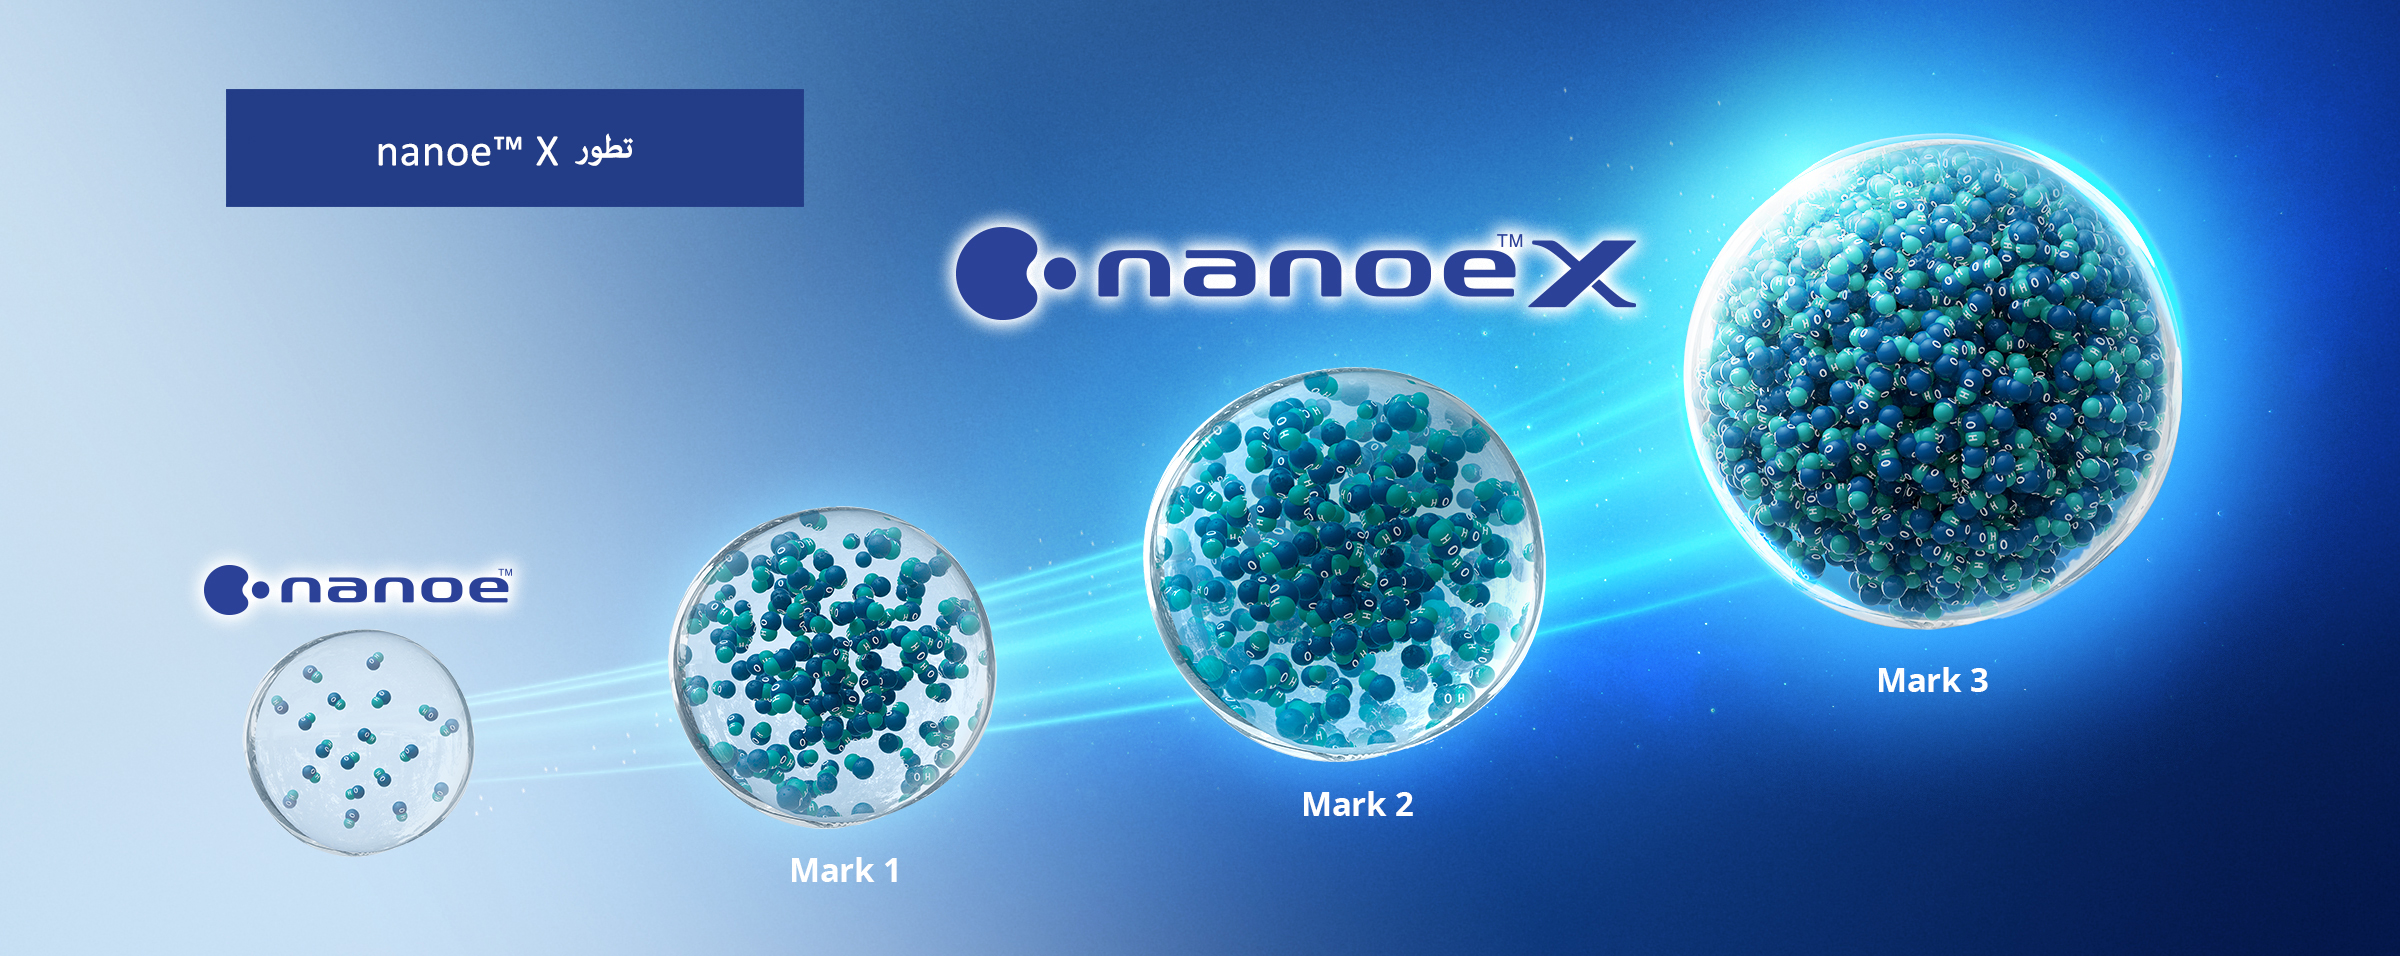 صورة توضح أن nanoe™ X يحتوي على العديد من جذور الهيدروكسيل